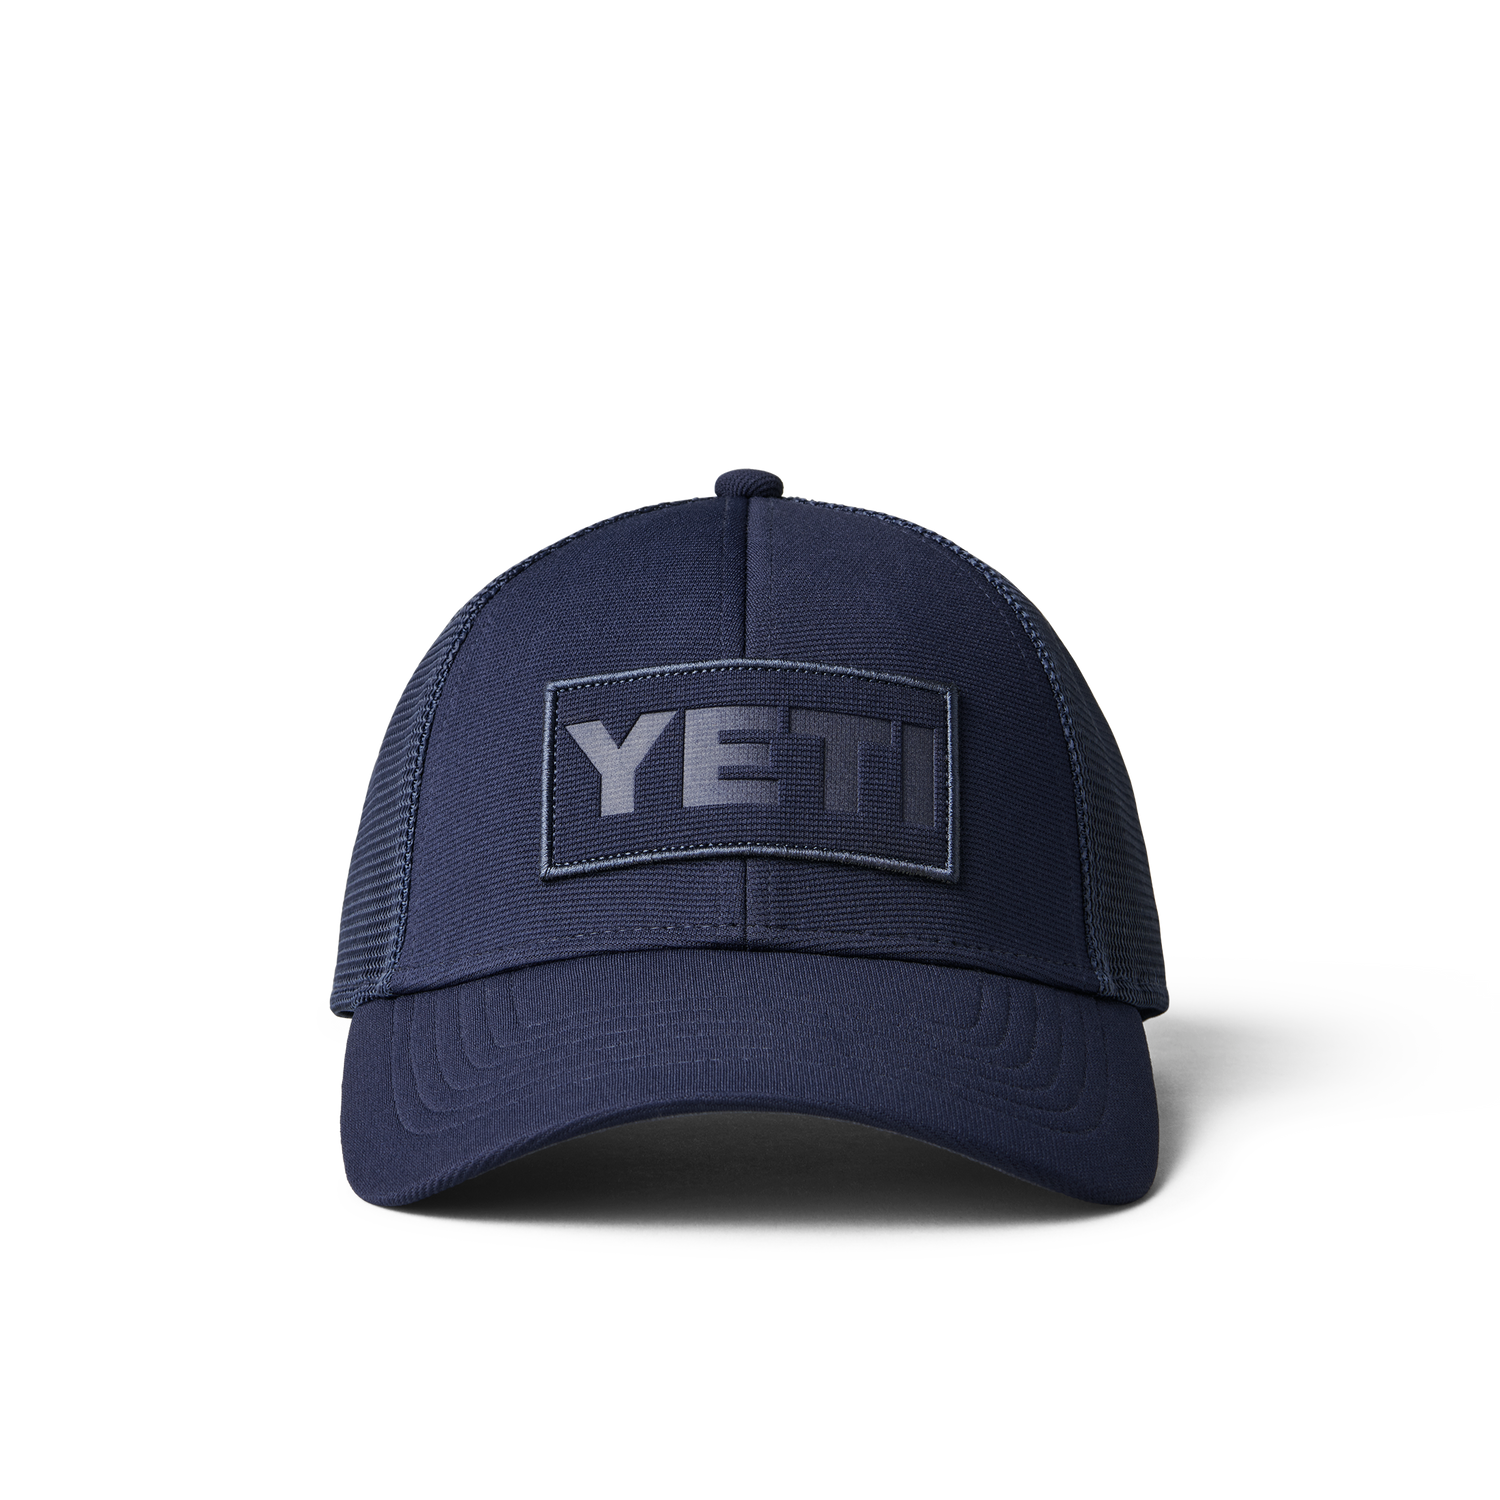 YETI Clothing: Hats, Shirts, Hoodies And More – YETI EUROPE